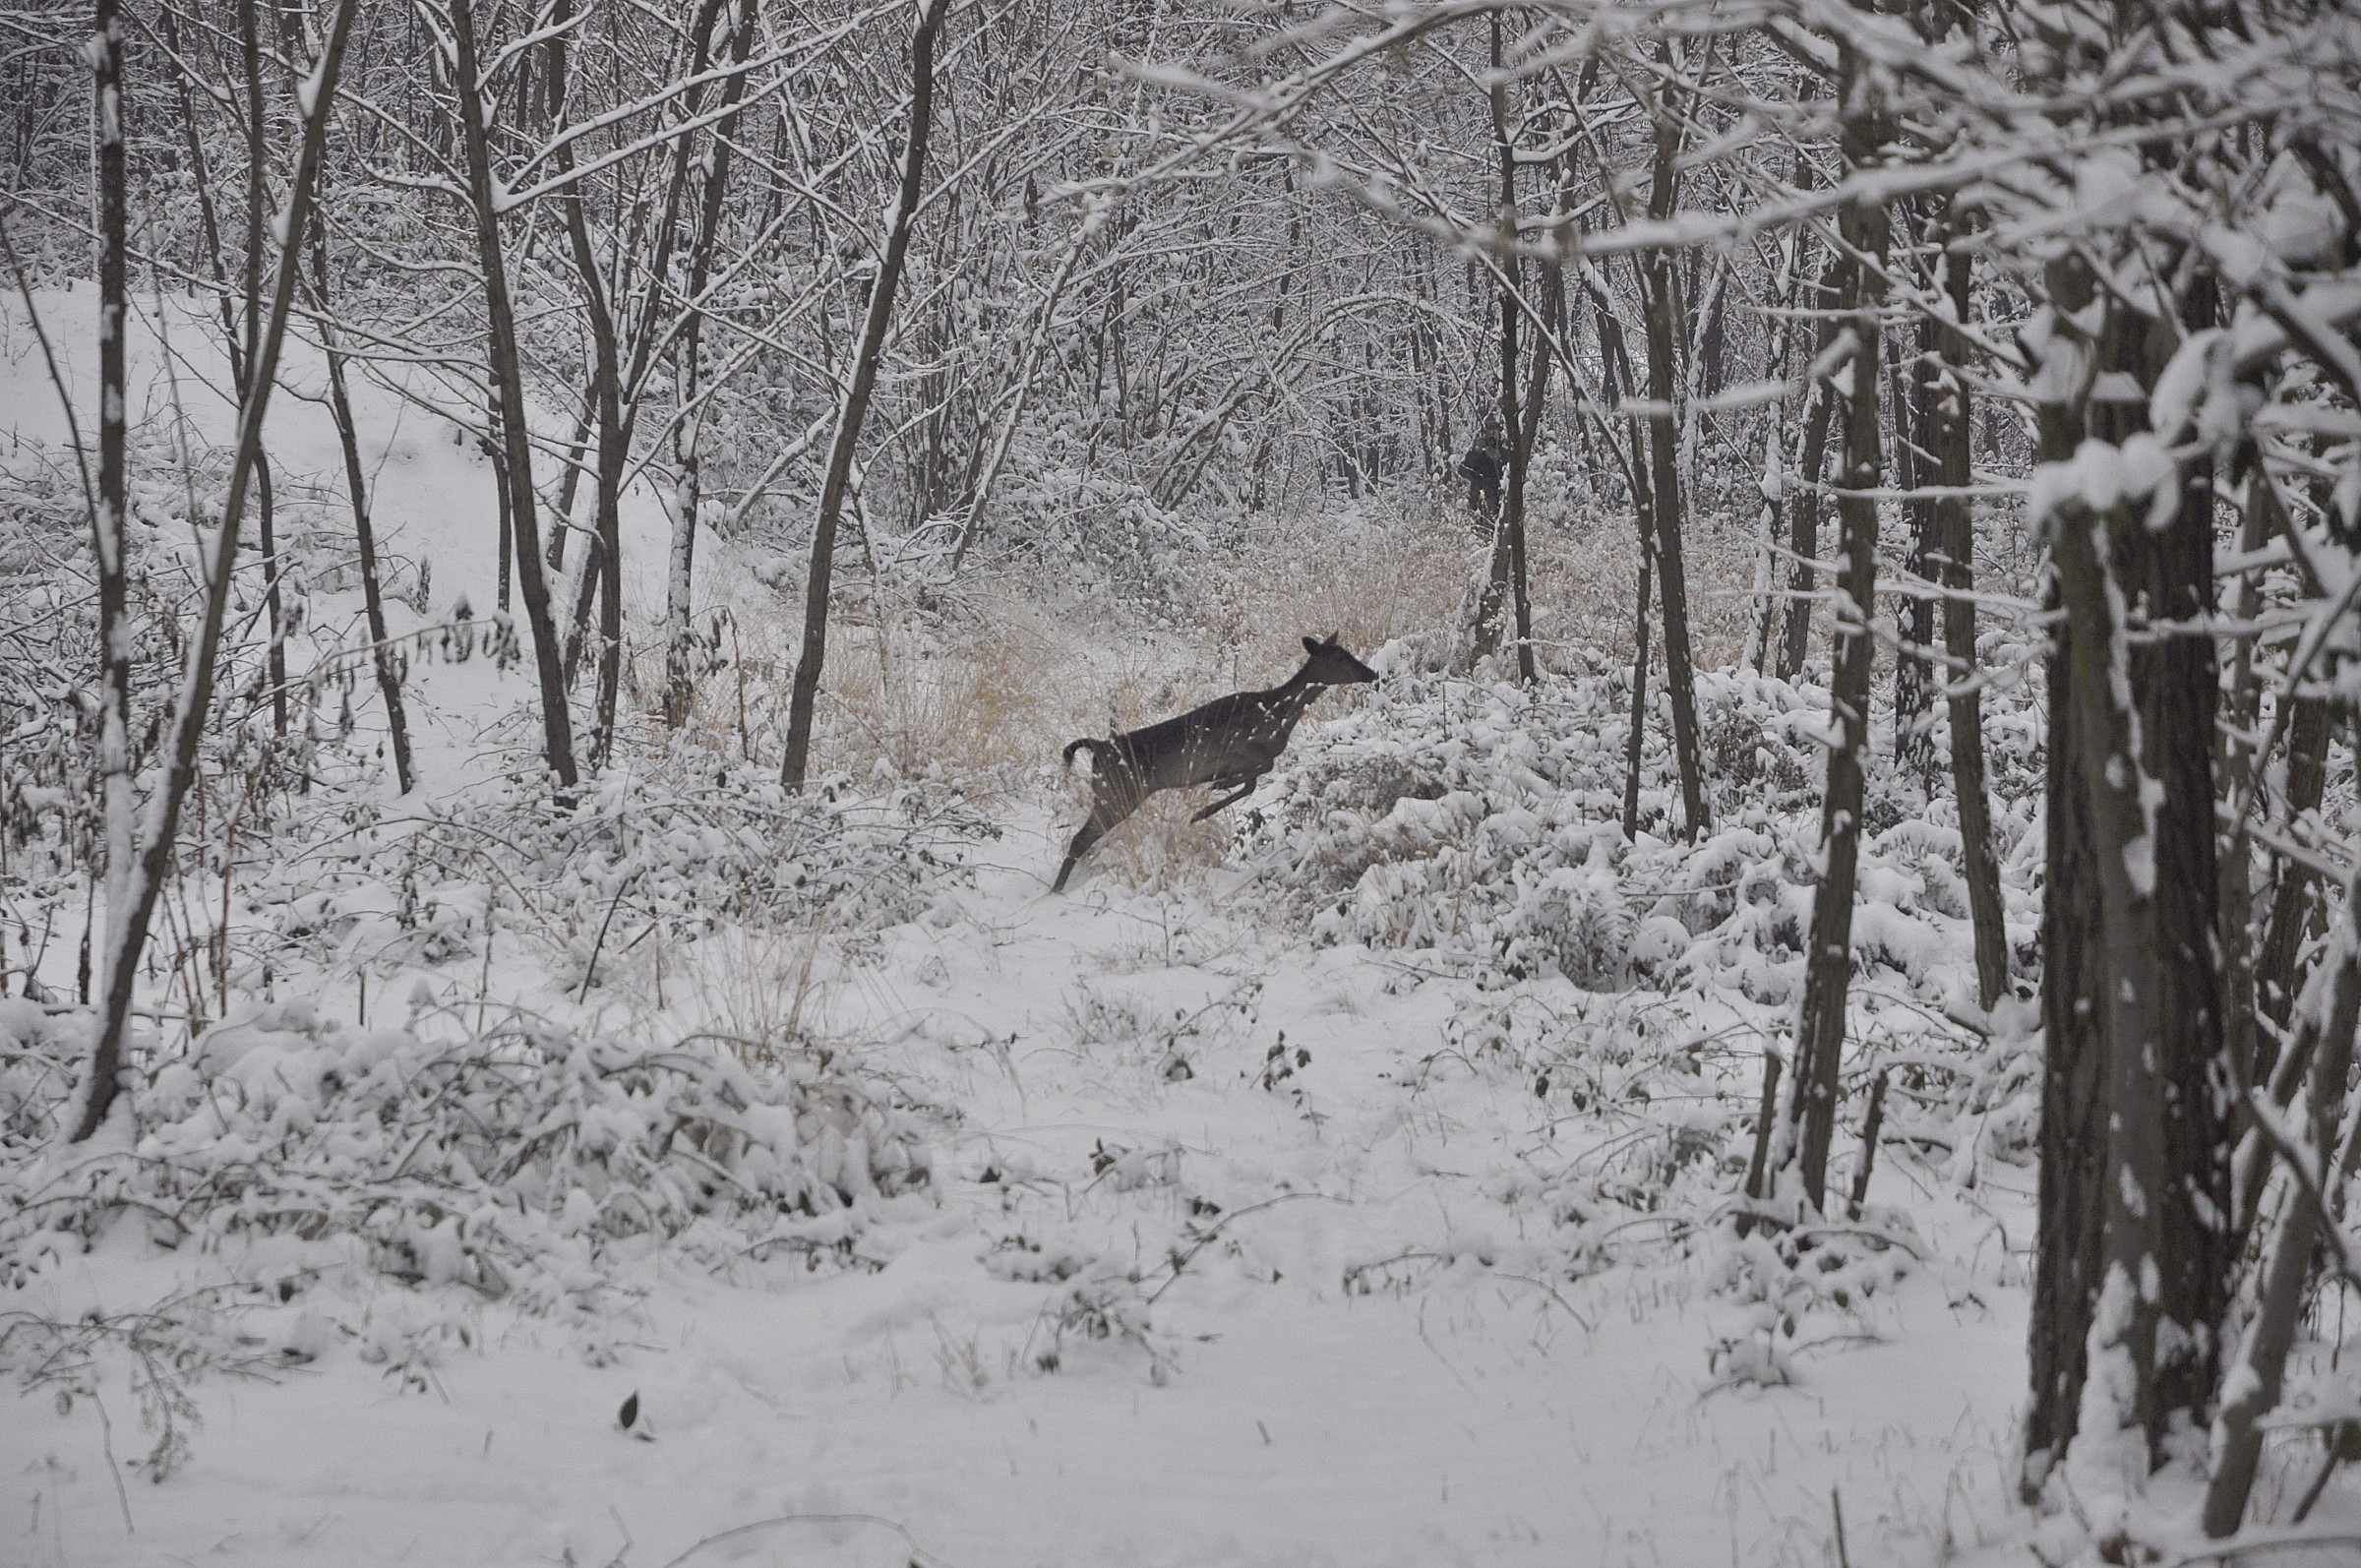 Deer in the snow...